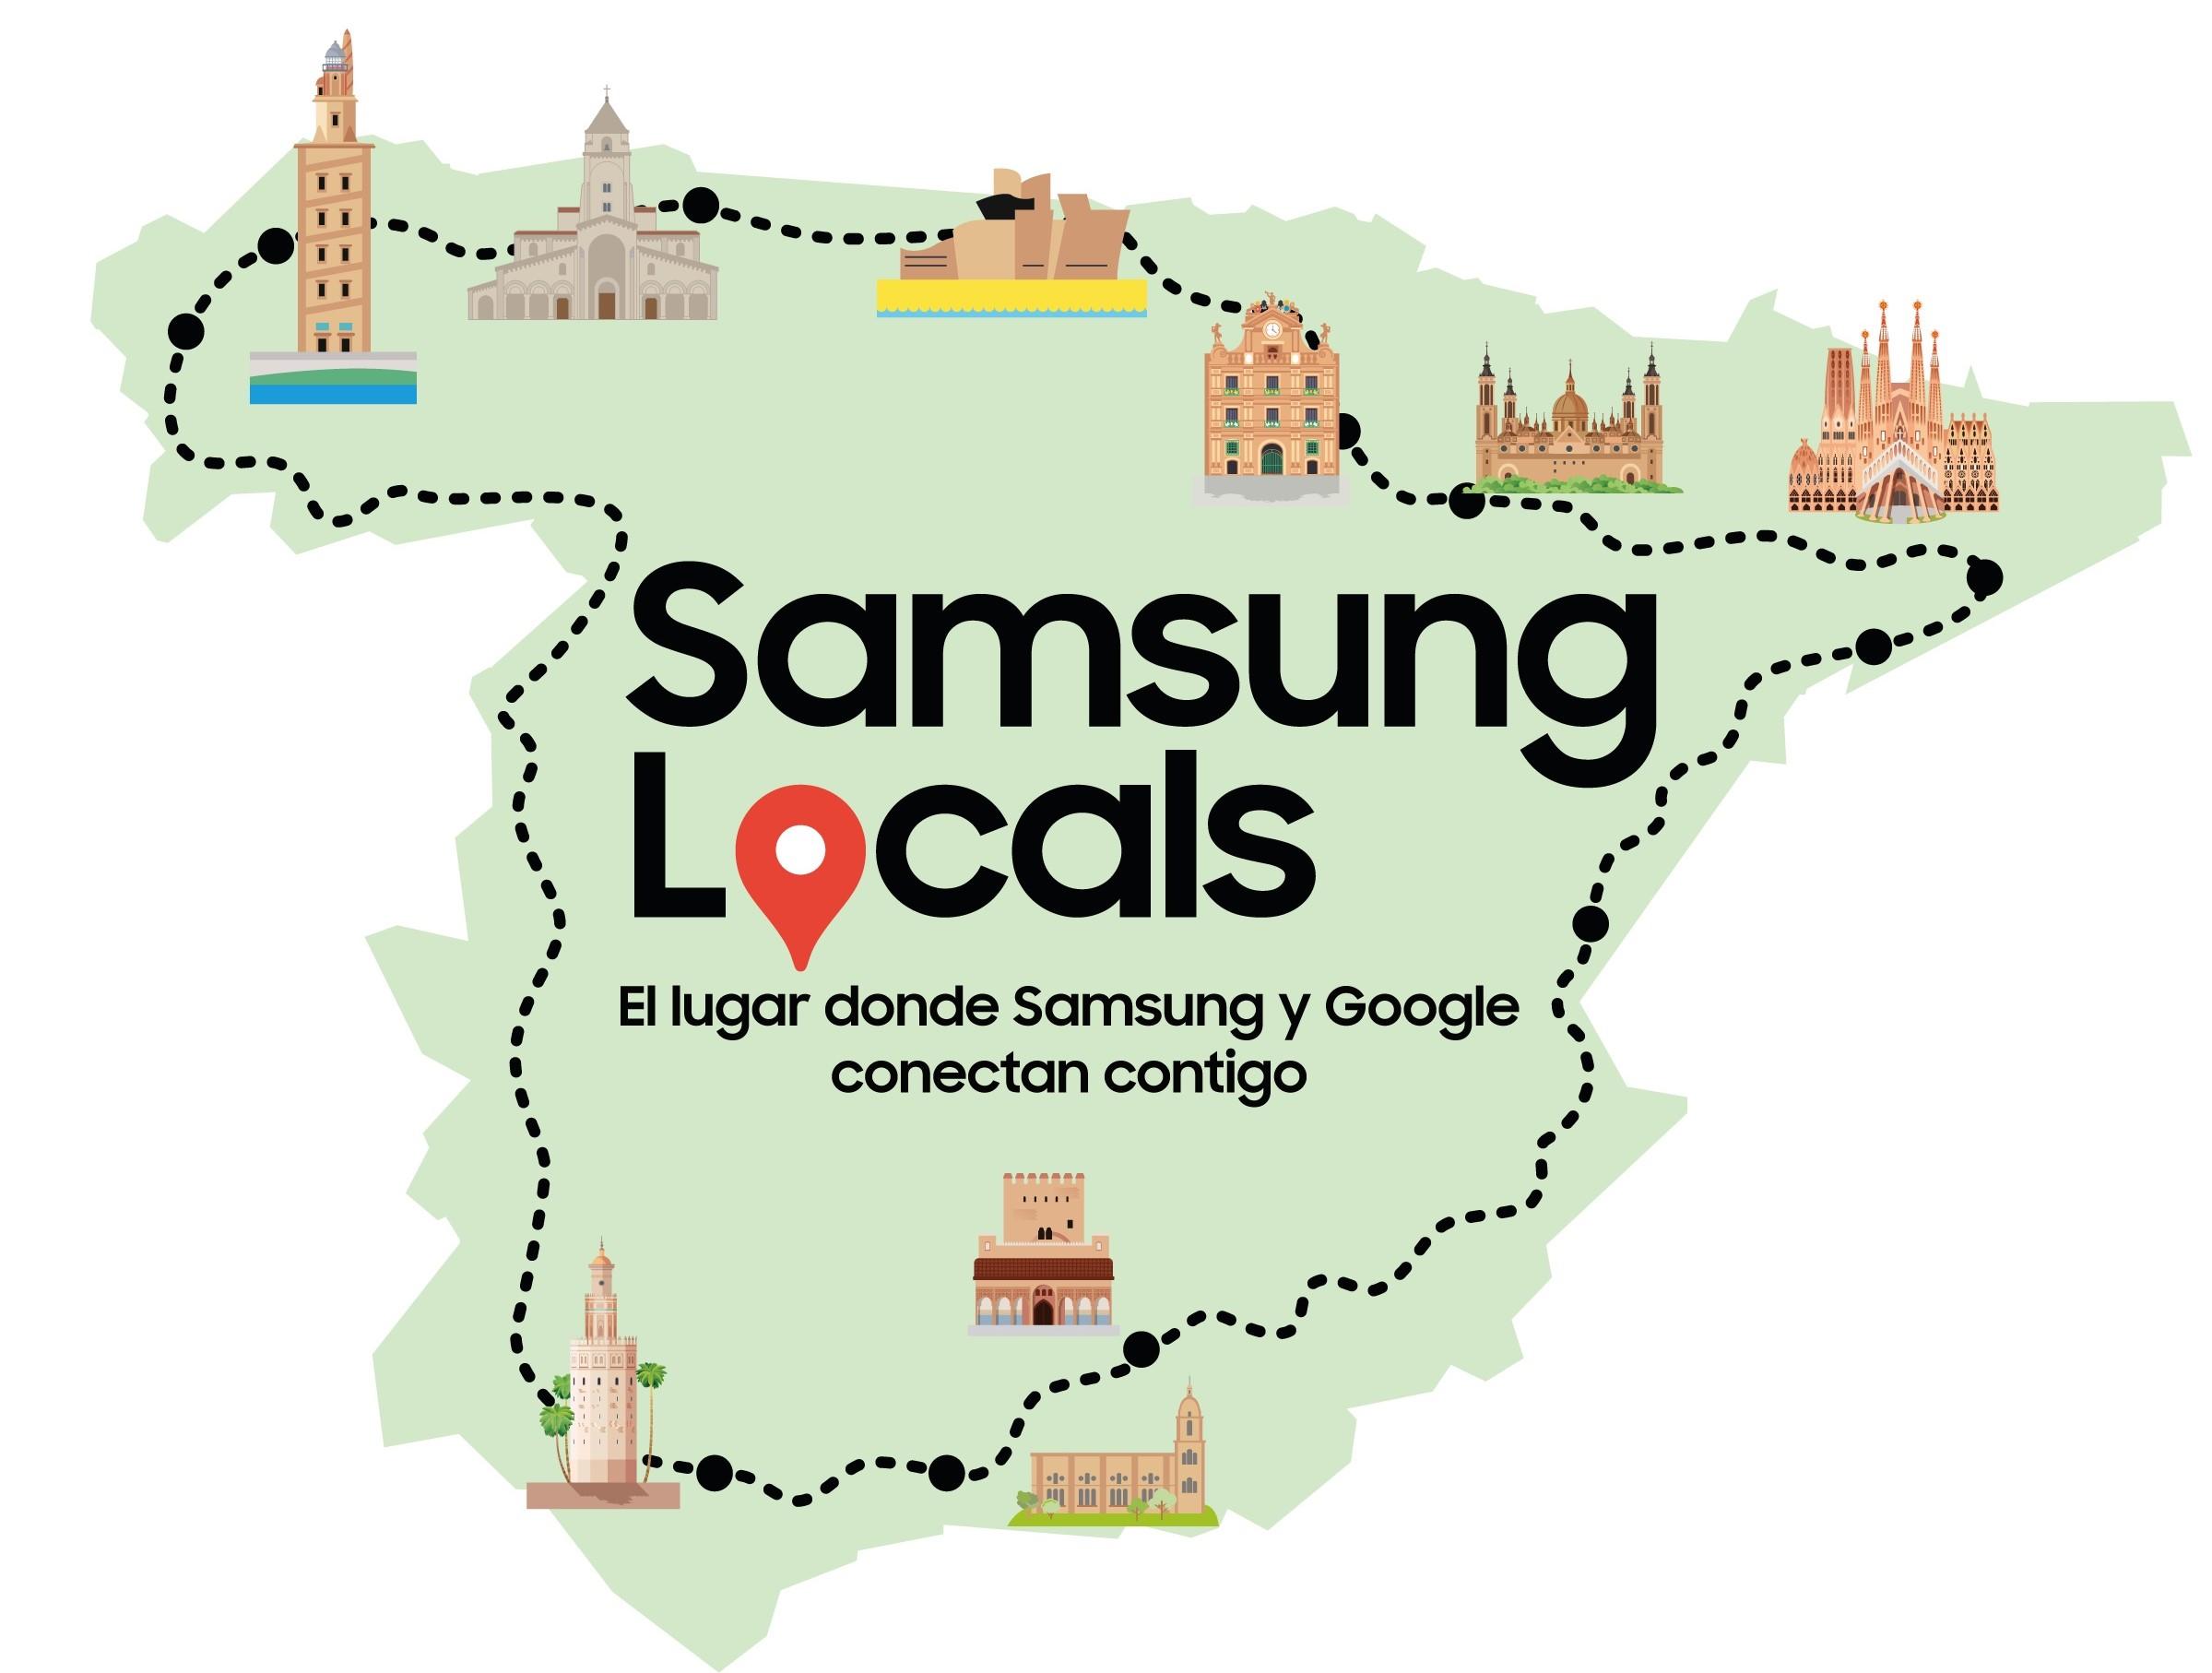 La ruta de Samsung Locals por España